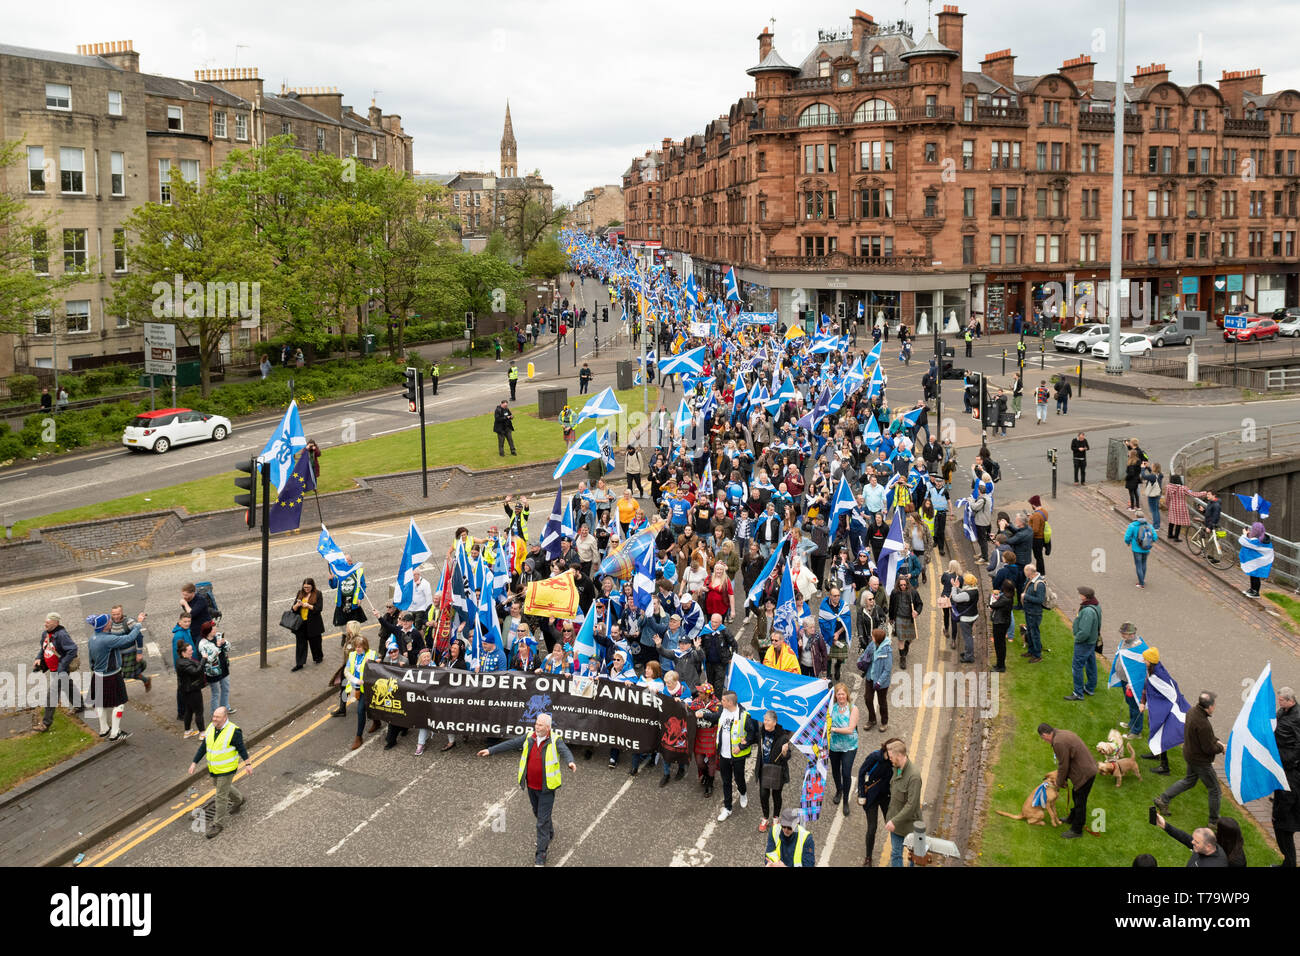 Le tout sous une même bannière mars organisée pour l'indépendance de l'Ecosse - Glasgow 2019 Banque D'Images